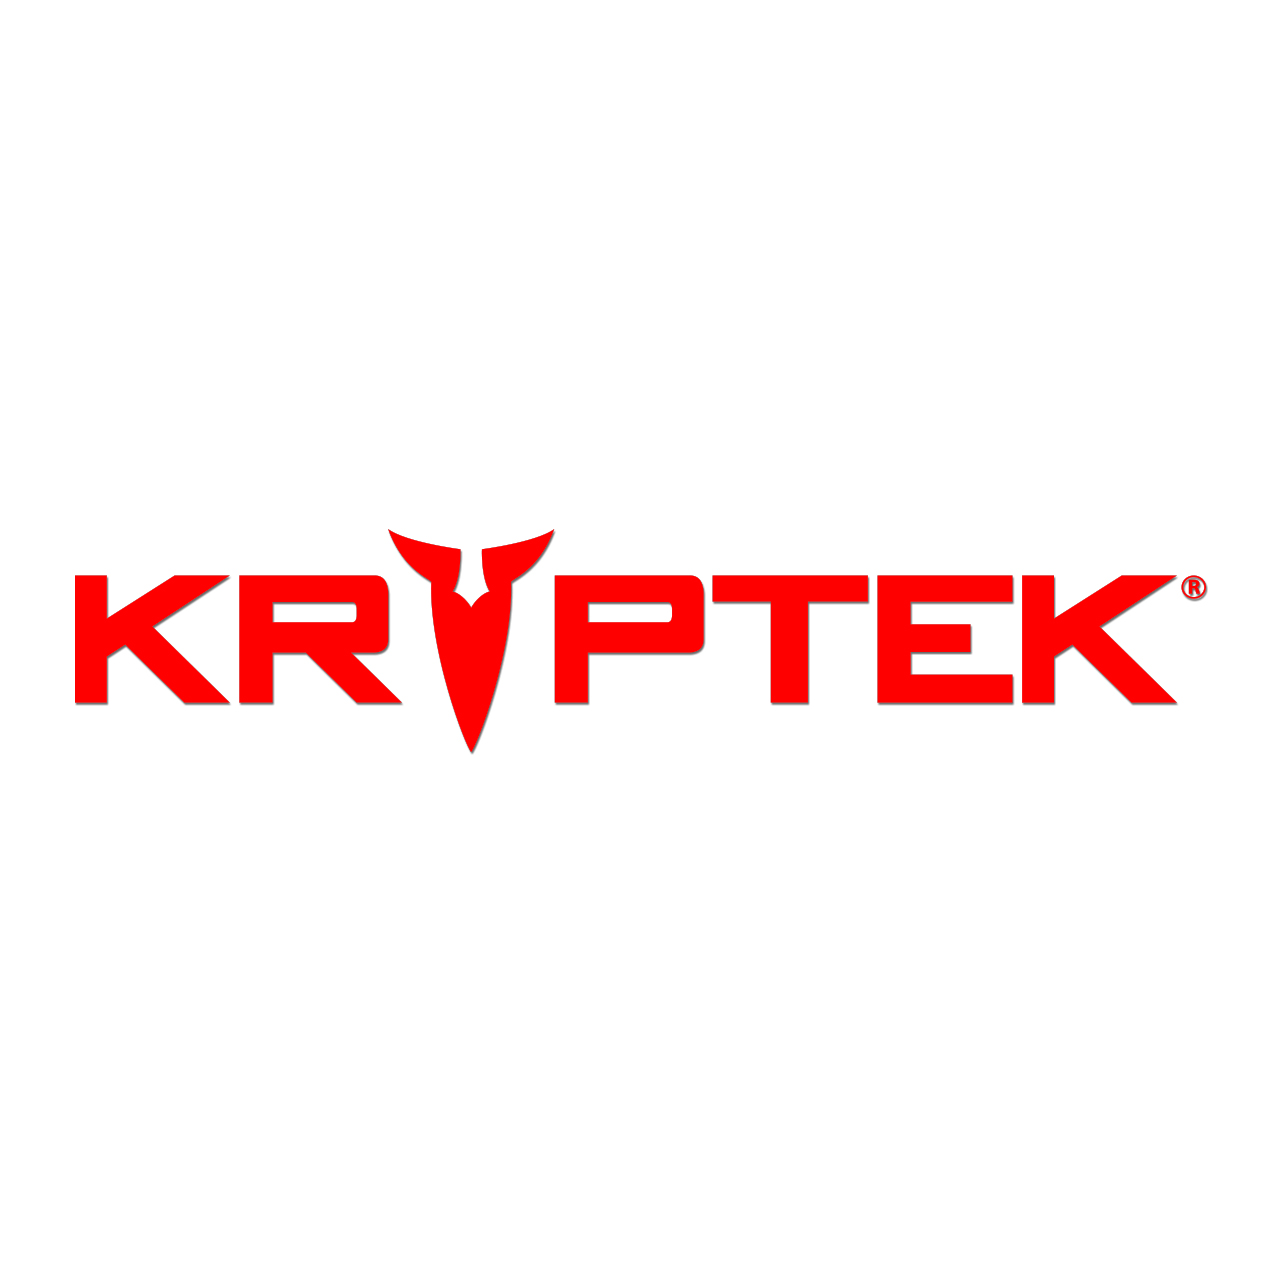 Promo codes Kryptek